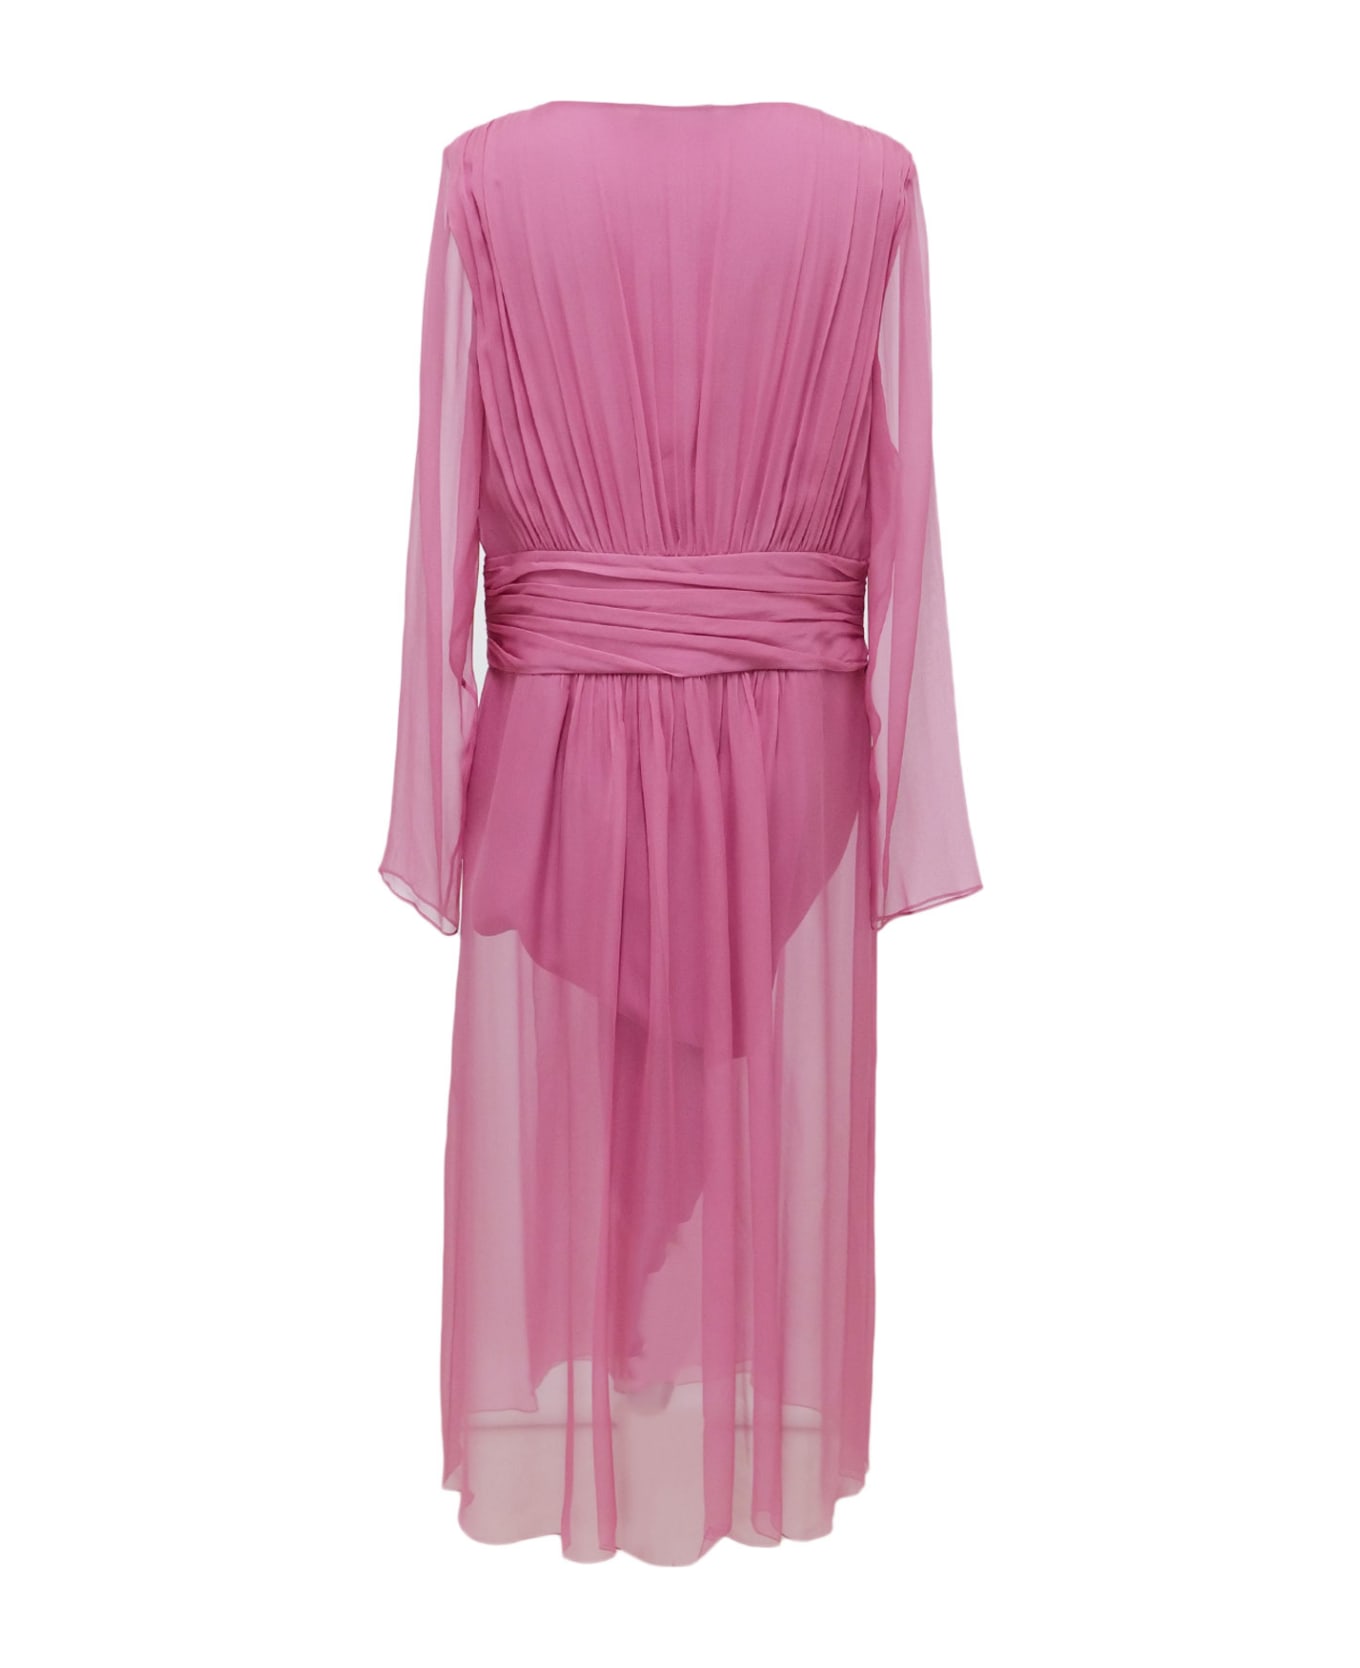 Alberta Ferretti Dress - Pink